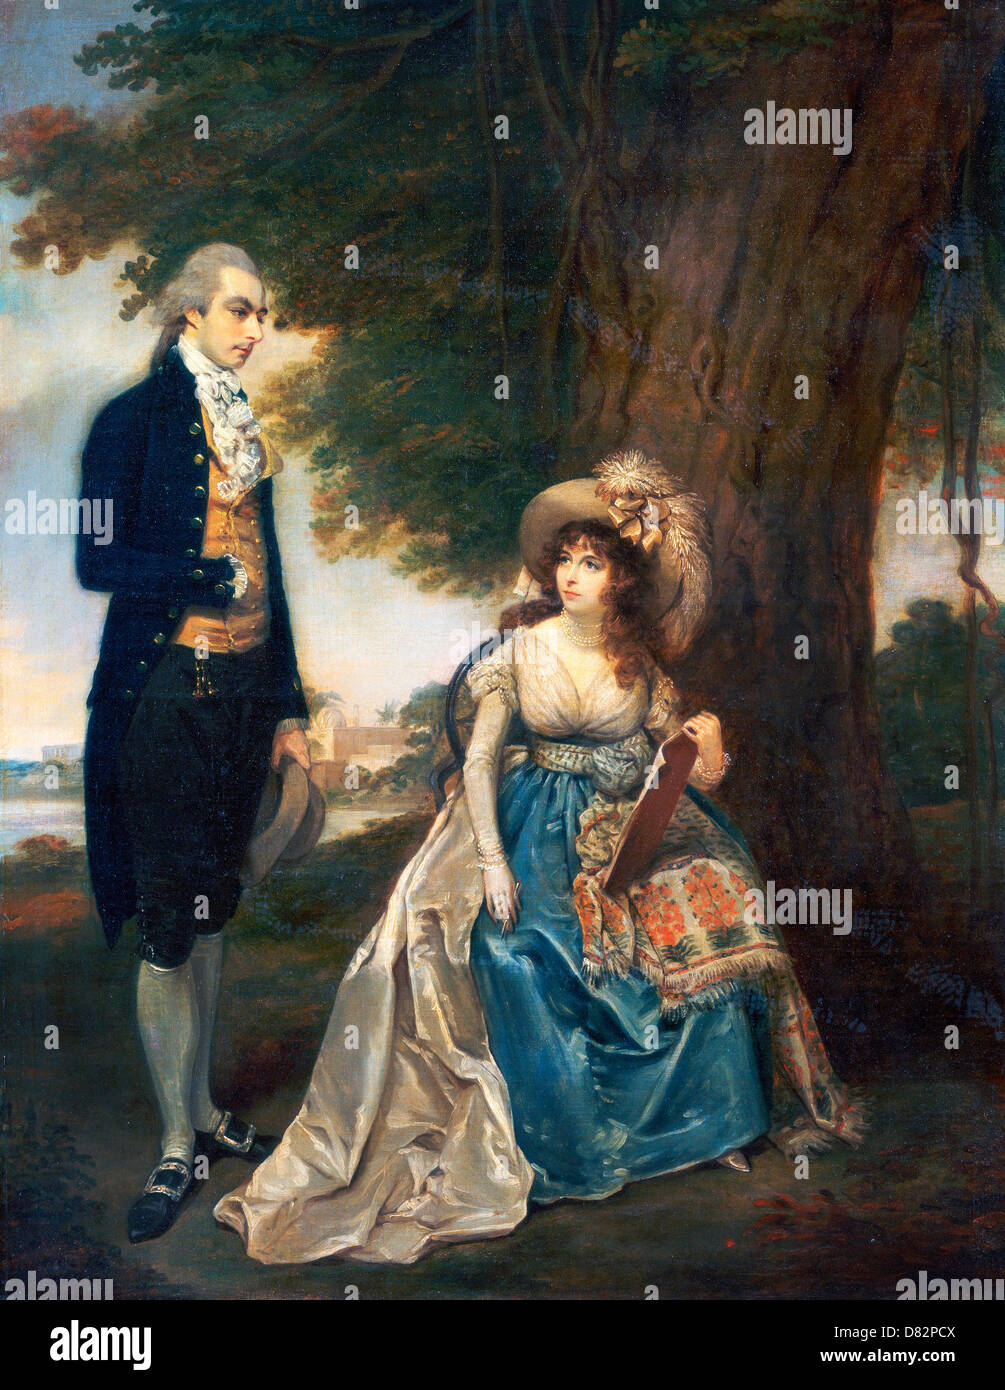 Arthur William Devis, Mr. und Mrs. Fraser 1785-1790 Öl auf Leinwand. Yale Center for British Art, New Haven, Connecticut, USA. Stockfoto